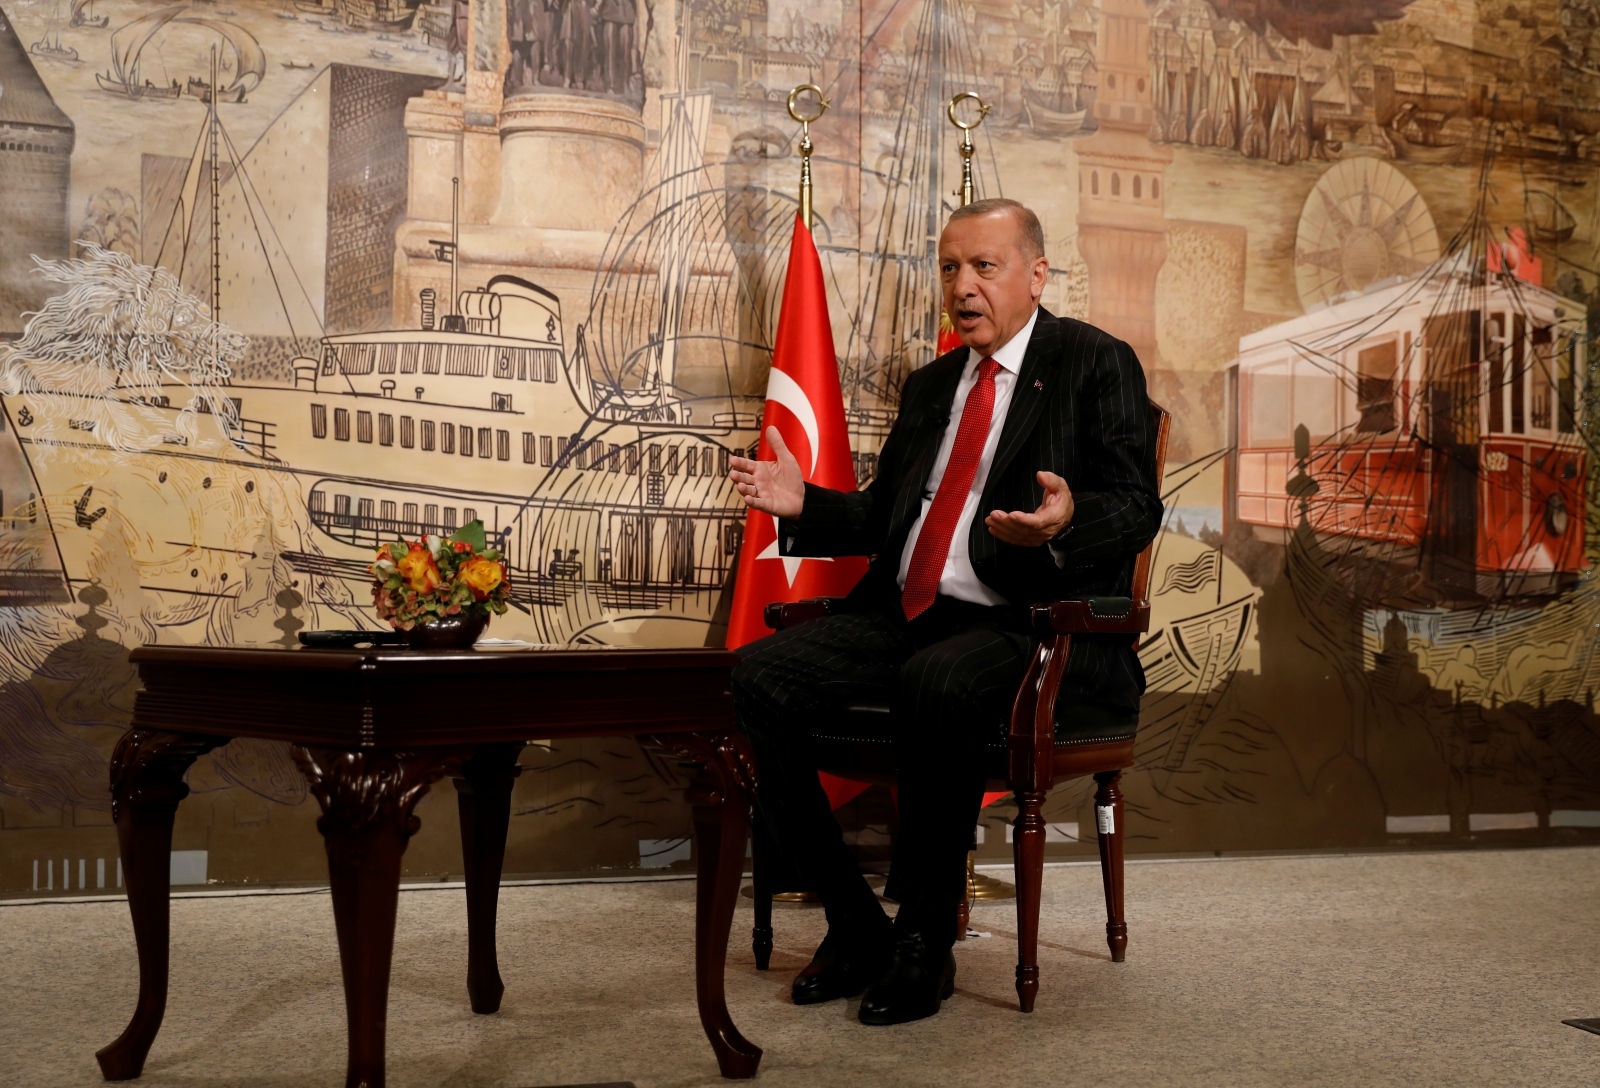 Turkish President Tayyip Erdogan speaks during an interview with Reuters in Istanbul Turkish President Tayyip Erdogan speaks during an interview with Reuters in Istanbul, Turkey, September 13, 2019. REUTERS/Umit Bektas UMIT BEKTAS